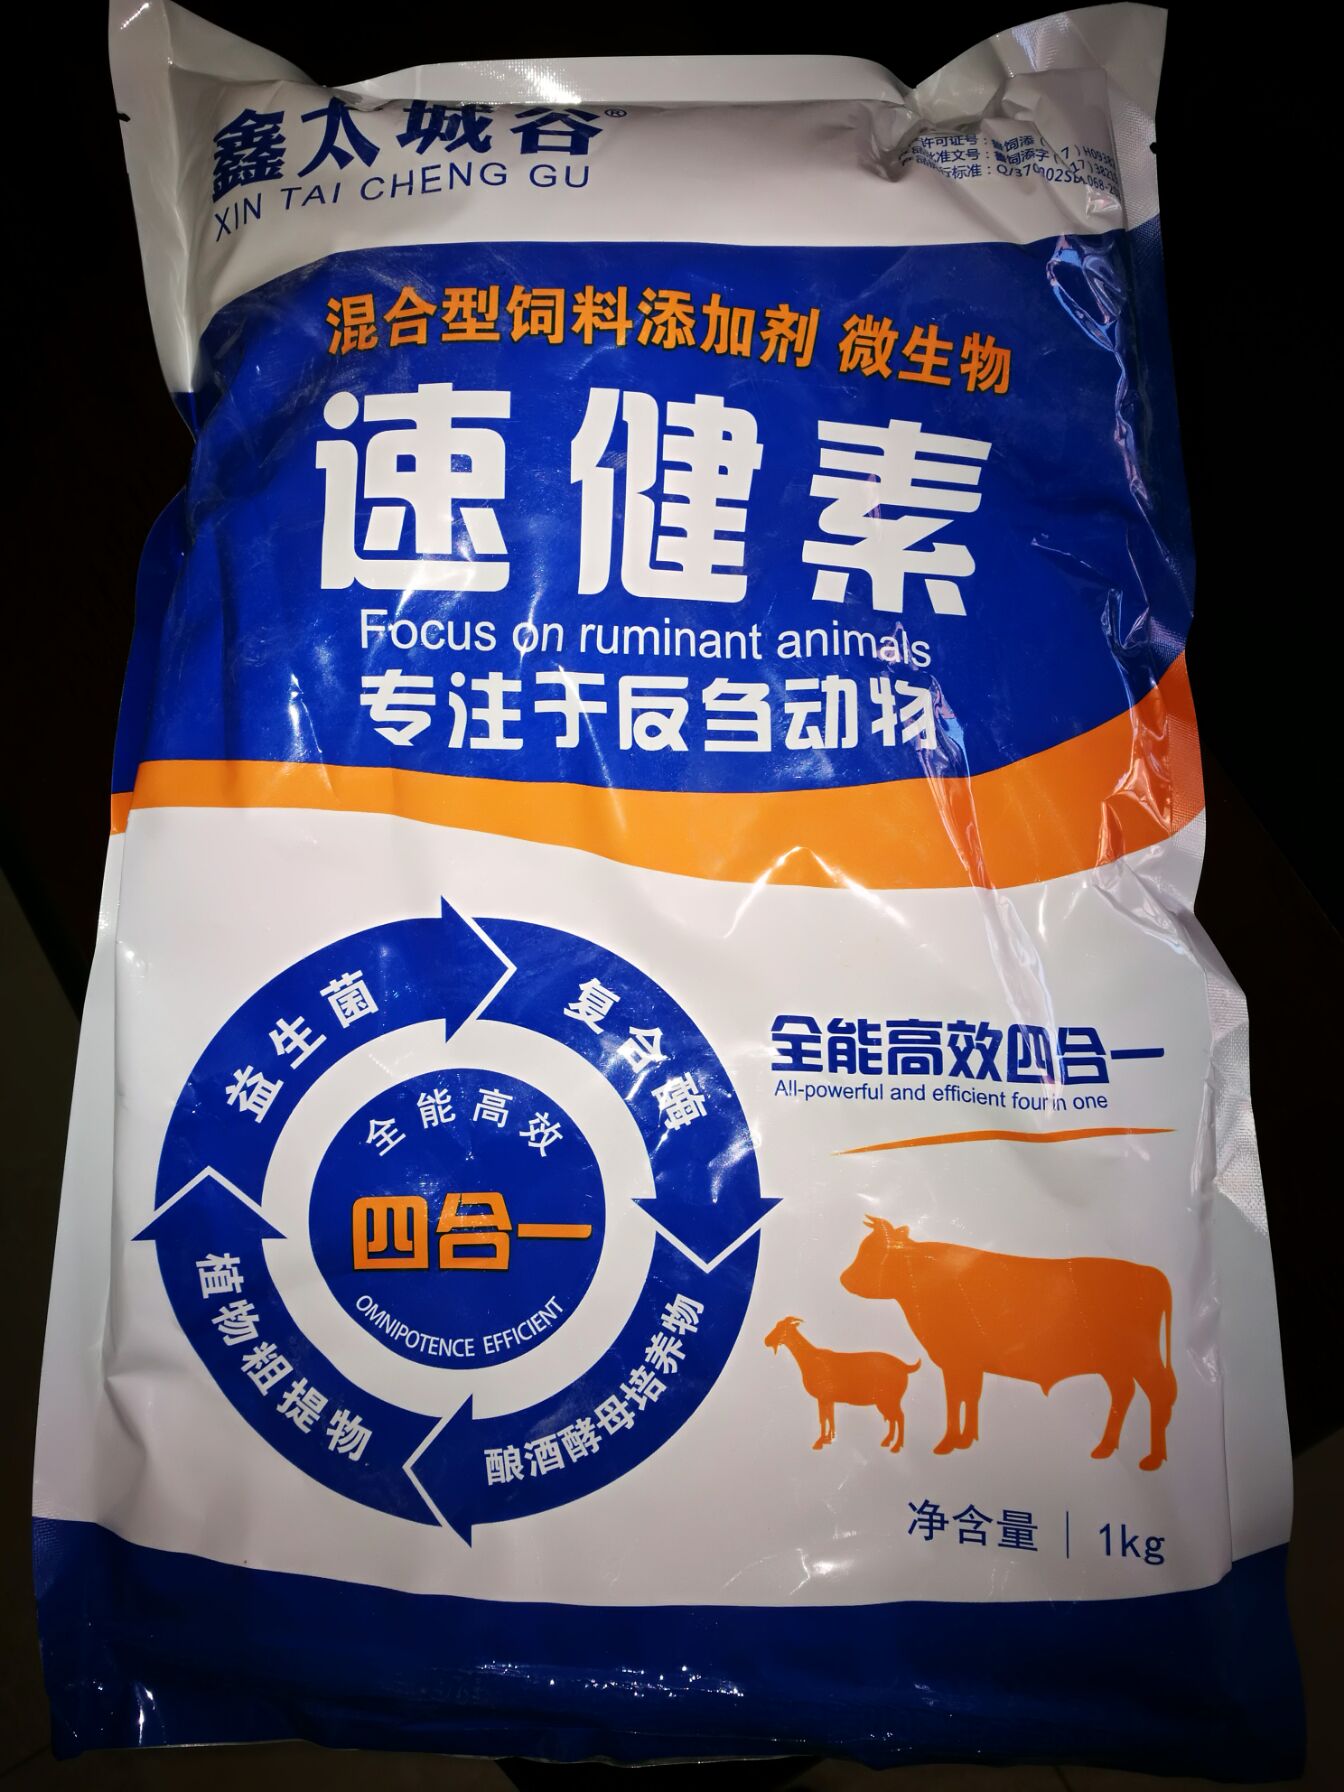 北京鑫太城谷品牌速健素混合型添加